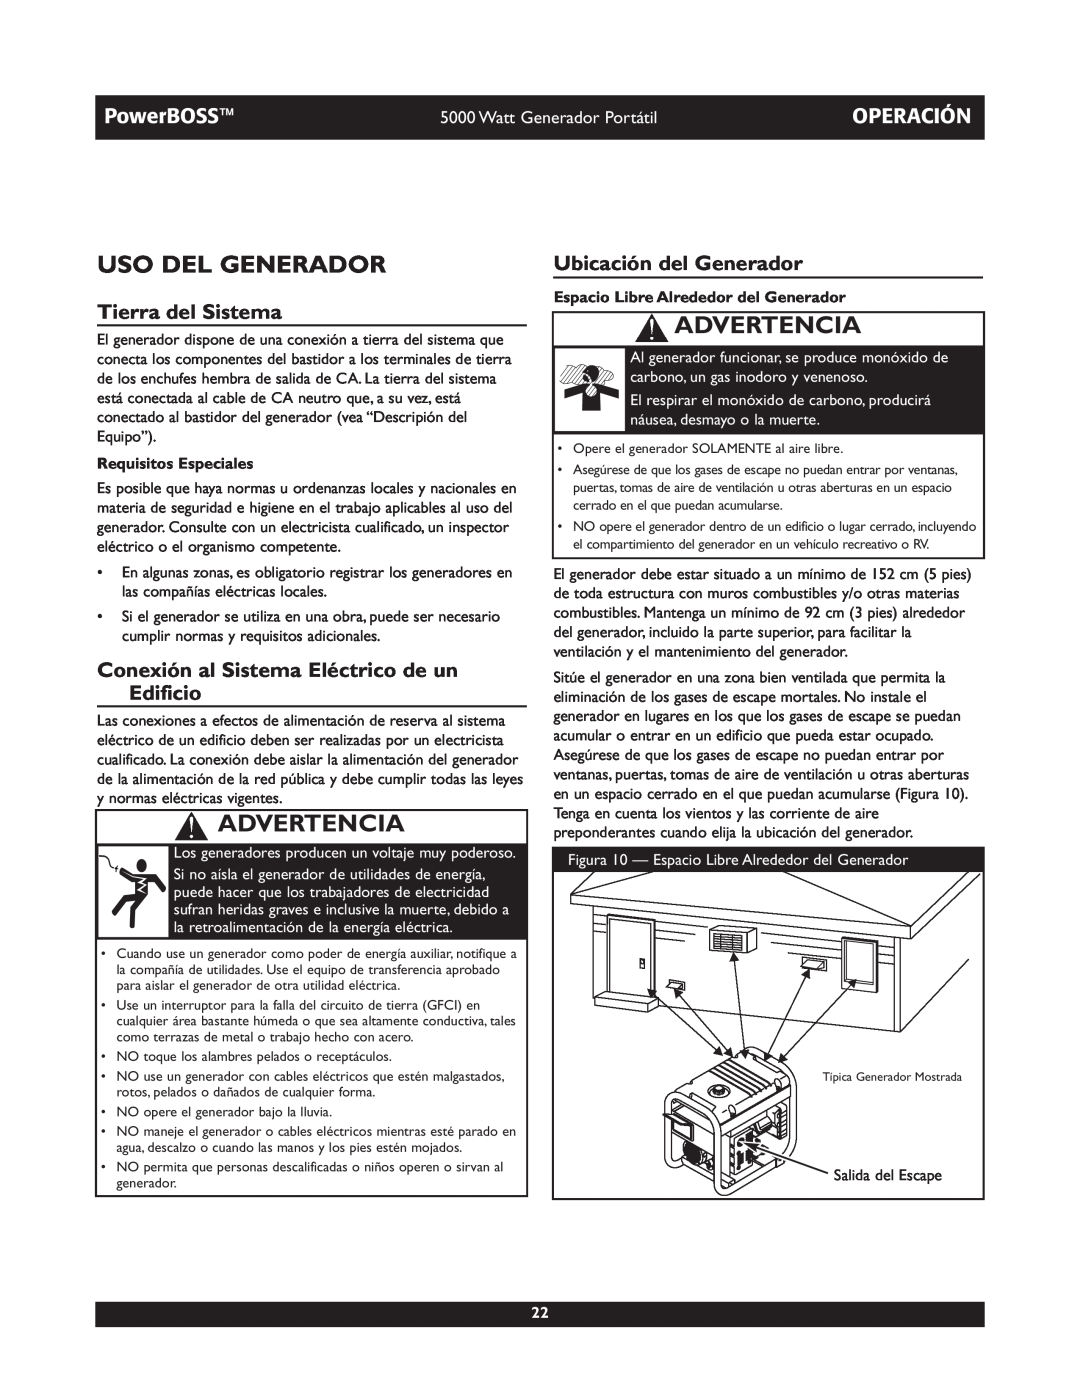 Briggs & Stratton 030222 Uso Del Generador, Operación, Tierra del Sistema, Ubicación del Generador, Advertencia, PowerBOSS 